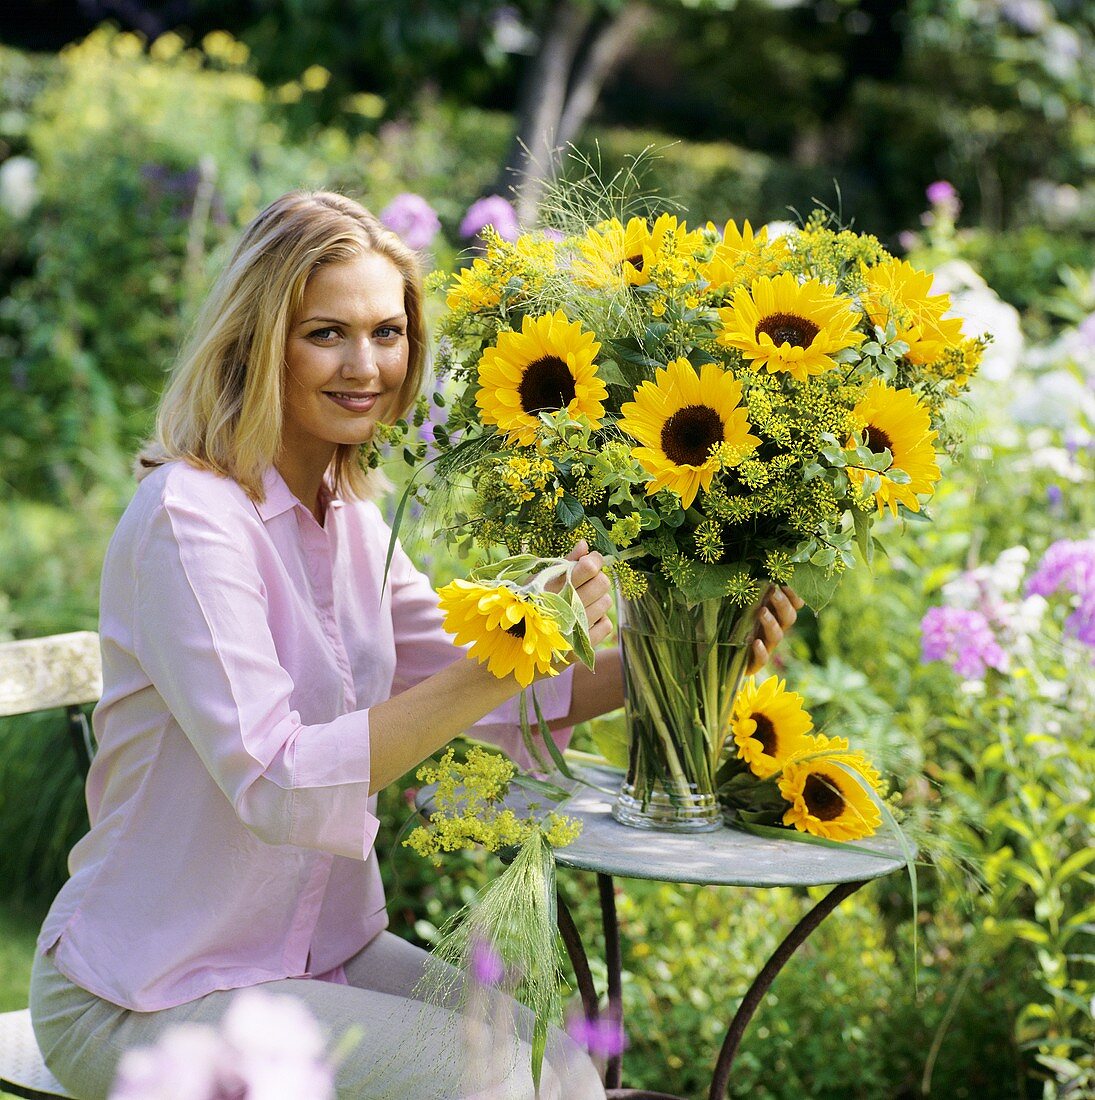 Junge Frau beim Sommerblumen in die Vase stellen